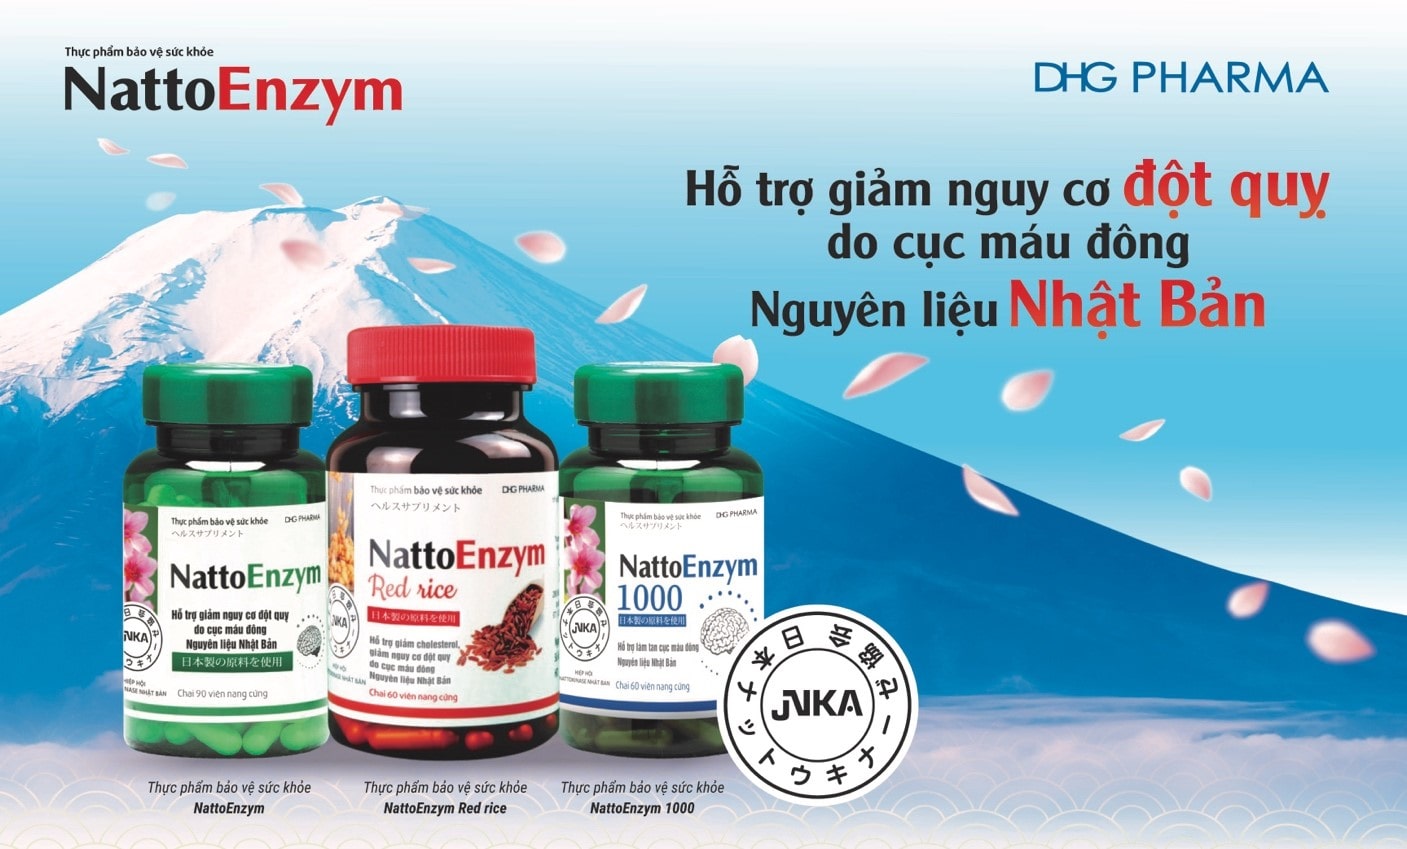 NattoEnzym DHG - Ngăn ngừa và phòng chống đột quỵ đạt chuẩn chất lượng Nhật Bản - Bộ ba sản phẩm NattoEnzym hỗ trợ giảm nguy cơ đột quỵ hiệu quả